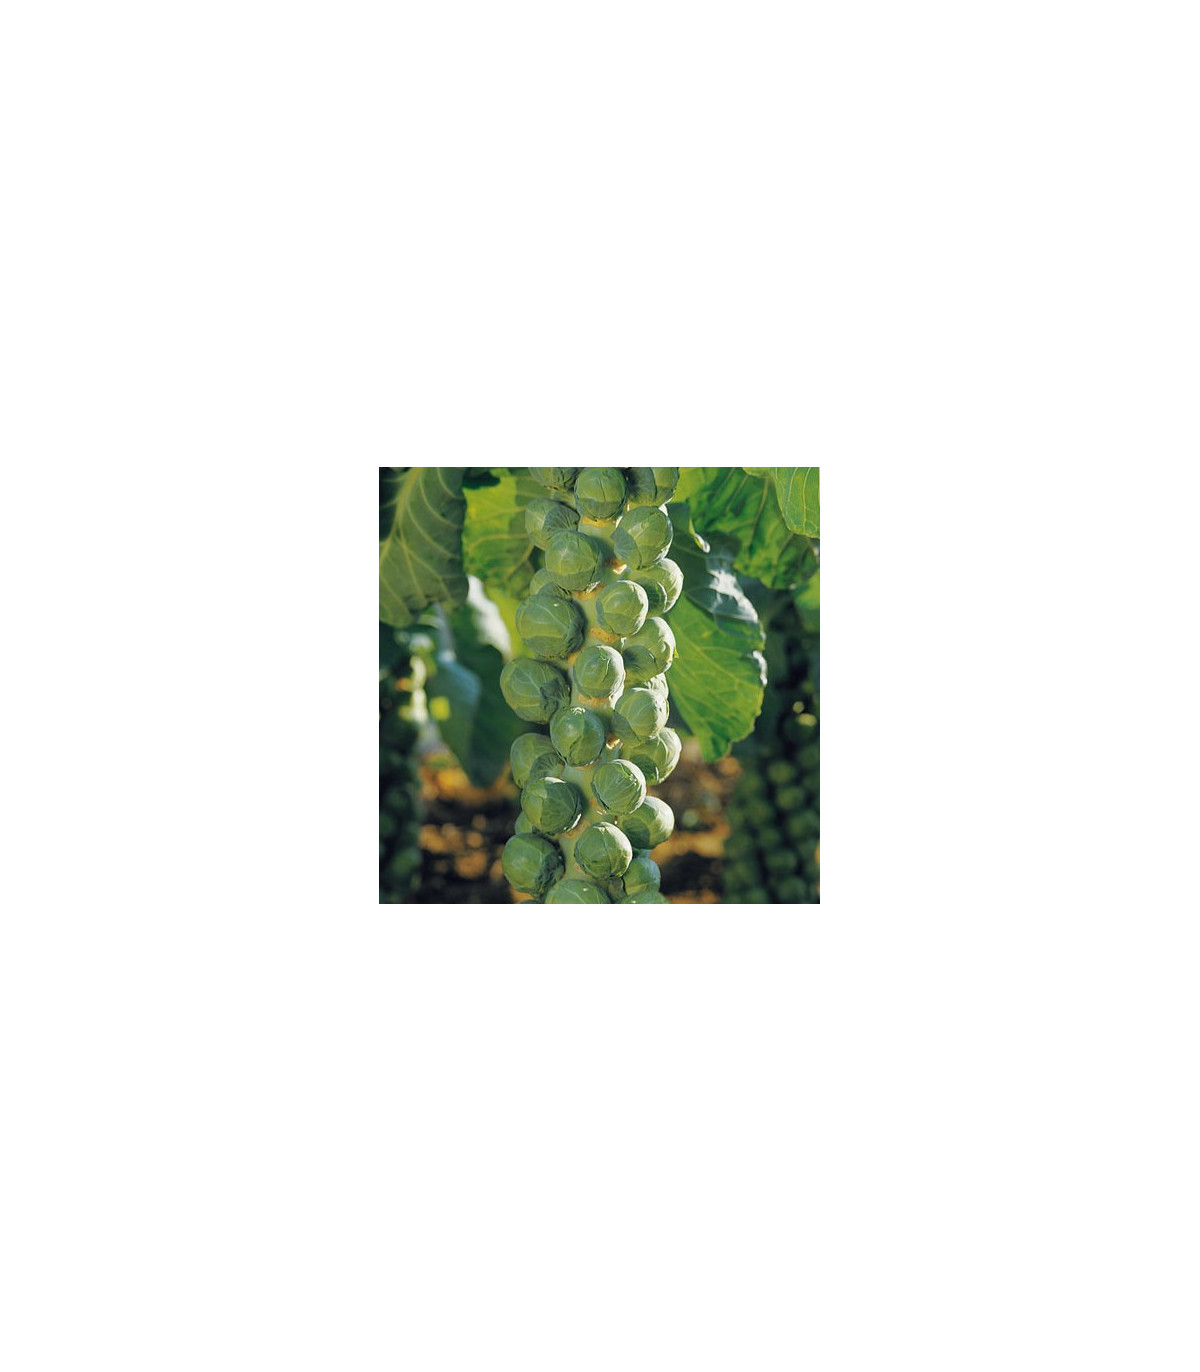 Kapusta růžičková Hilds Ideal - Brassica oleracea - semena kapusty - 0,5 gr